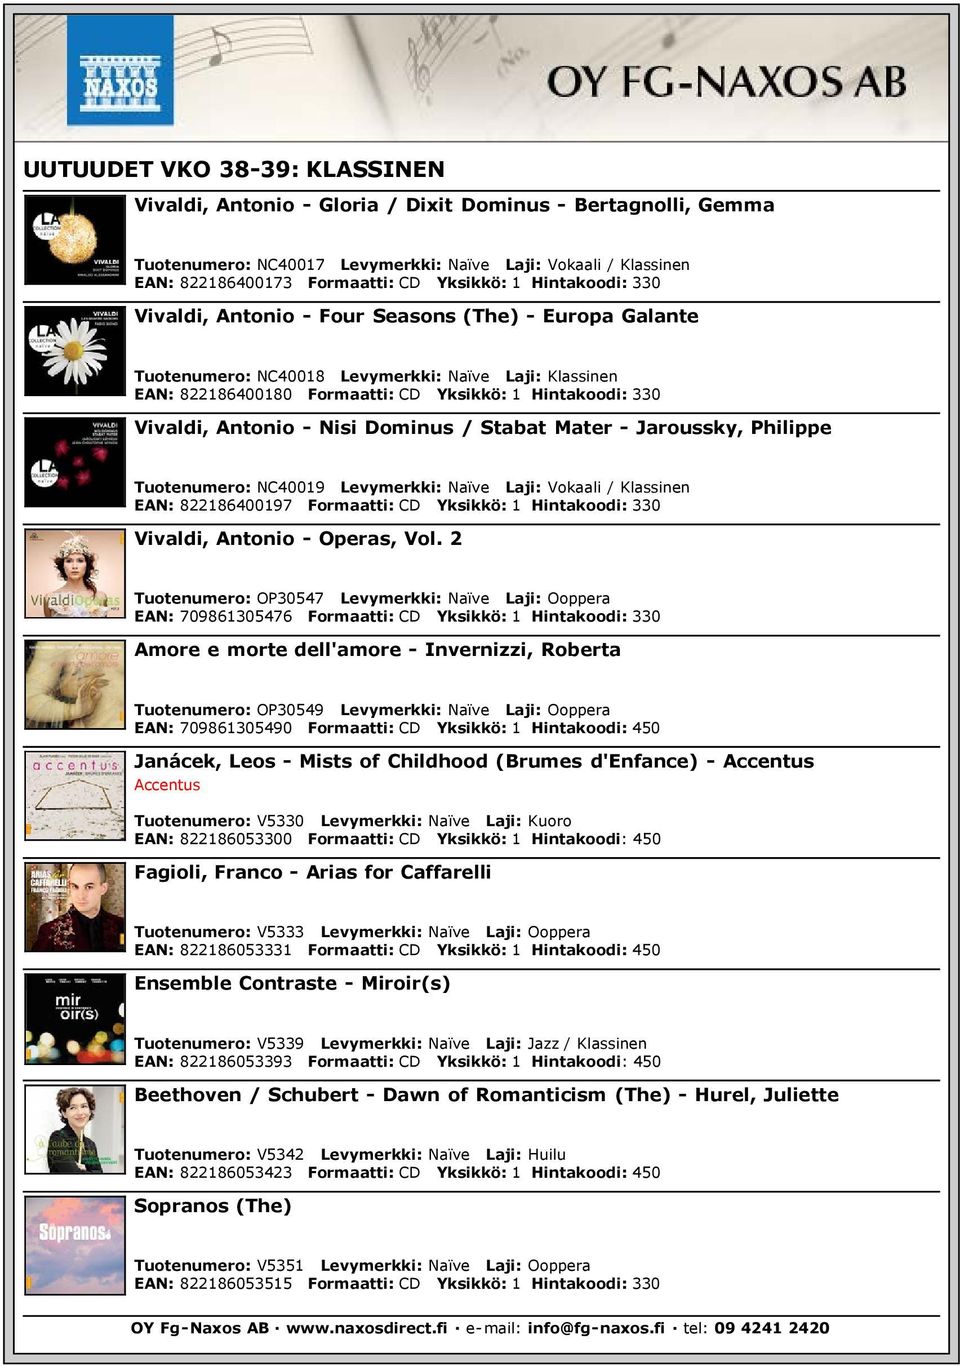 Stabat Mater - Jaroussky, Philippe Tuotenumero: NC40019 Levymerkki: Naïve Laji: Vokaali / Klassinen EAN: 822186400197 Formaatti: CD Yksikkö: 1 Hintakoodi: 330 Vivaldi, Antonio - Operas, Vol.